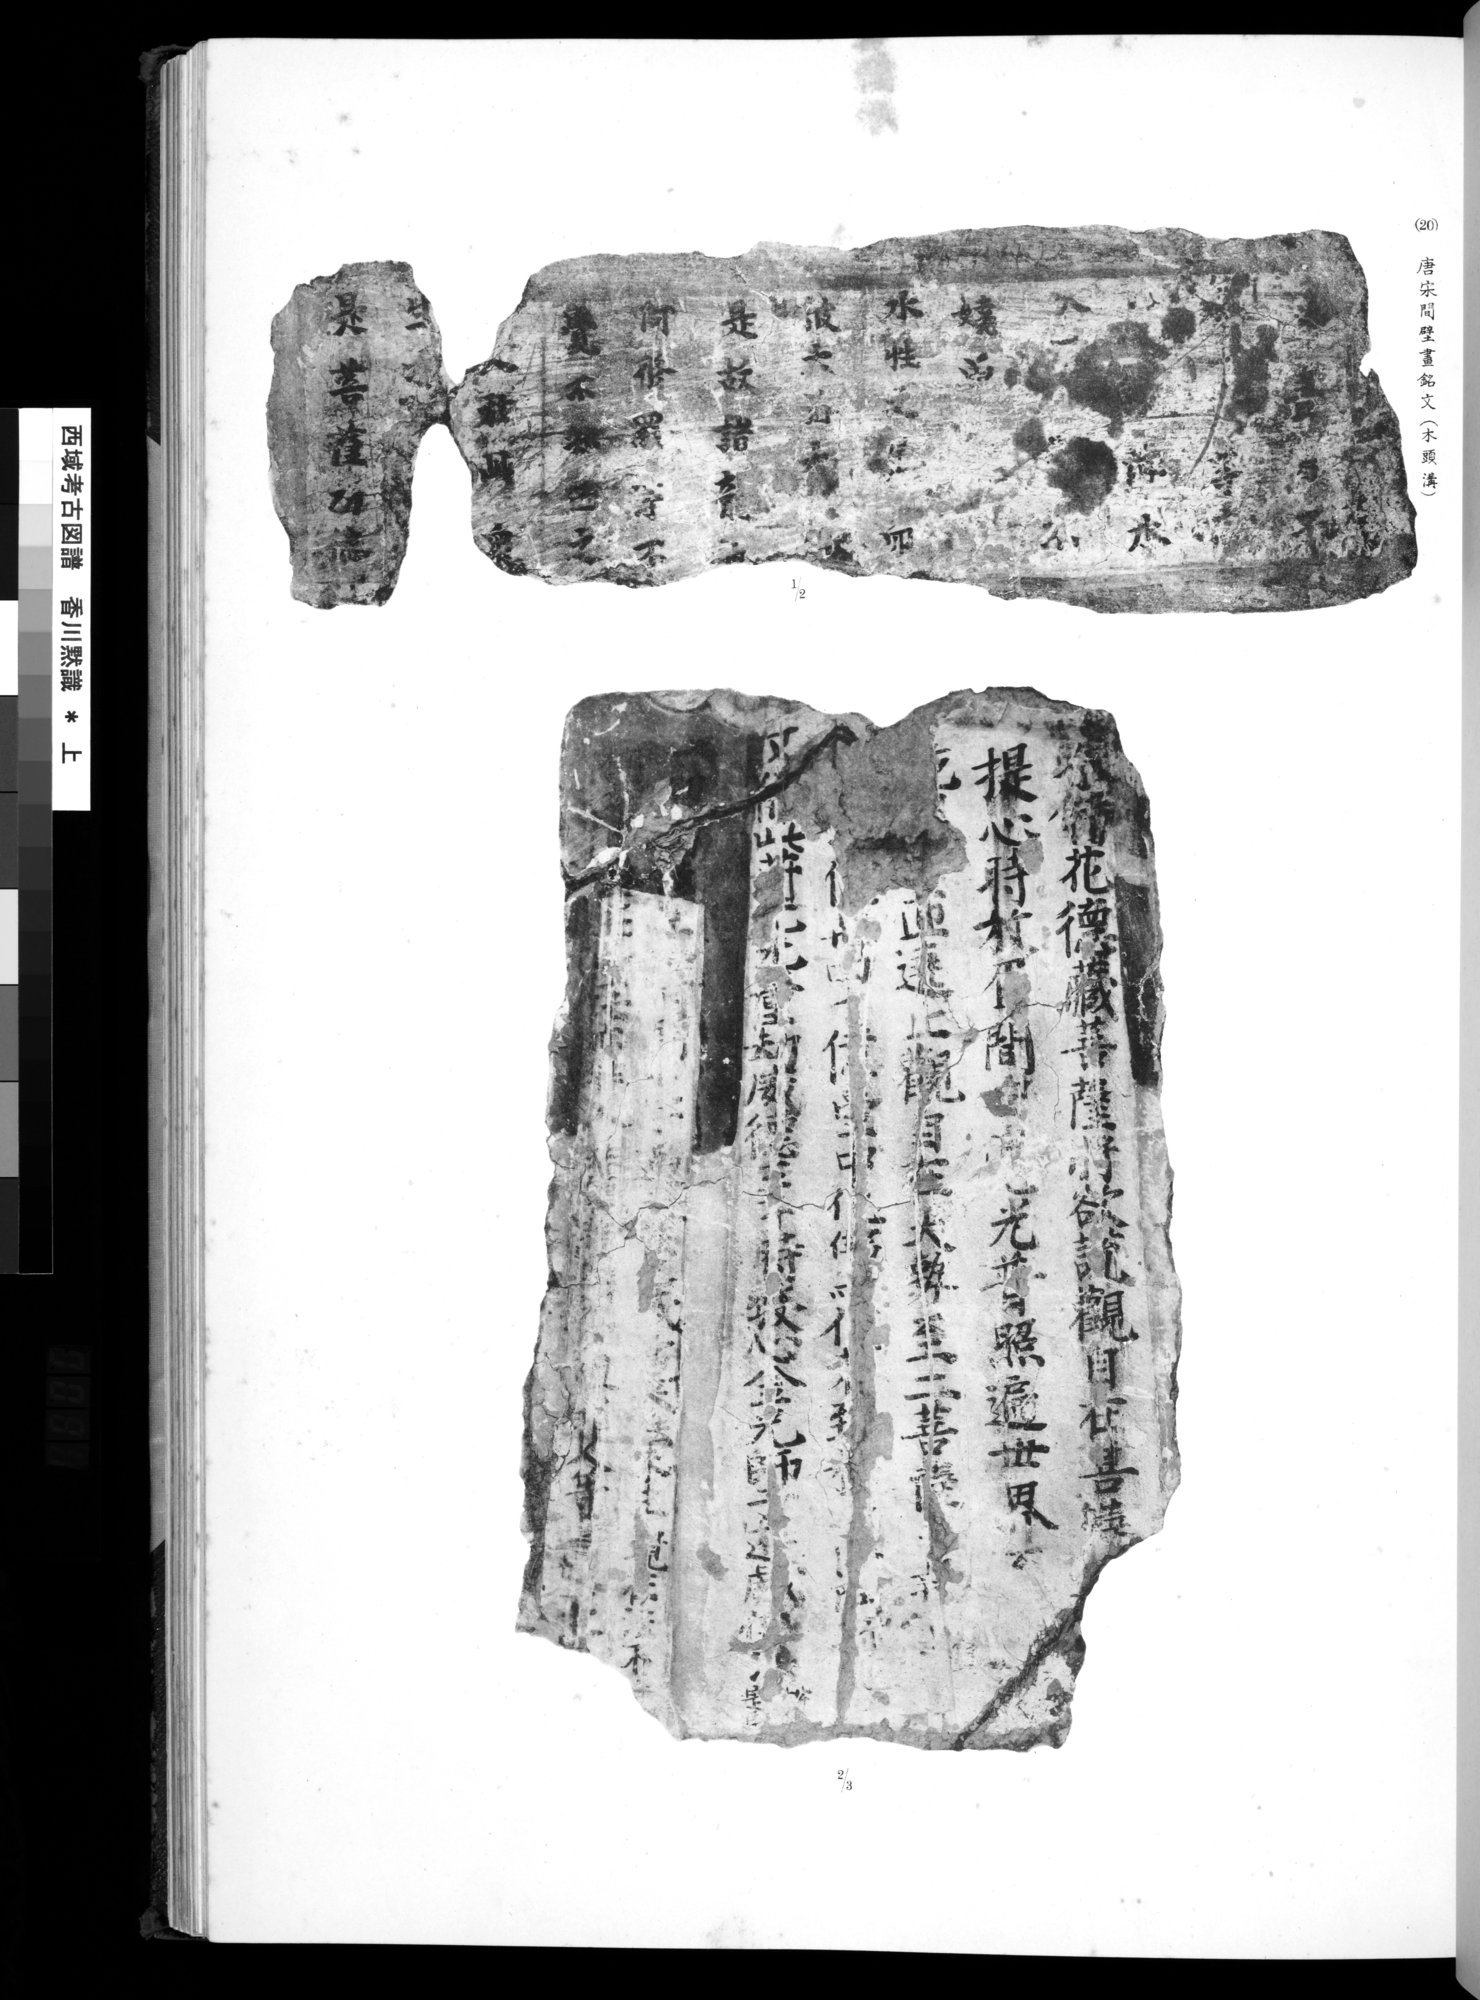 西域考古図譜 : vol.1 / 61 ページ（白黒高解像度画像）